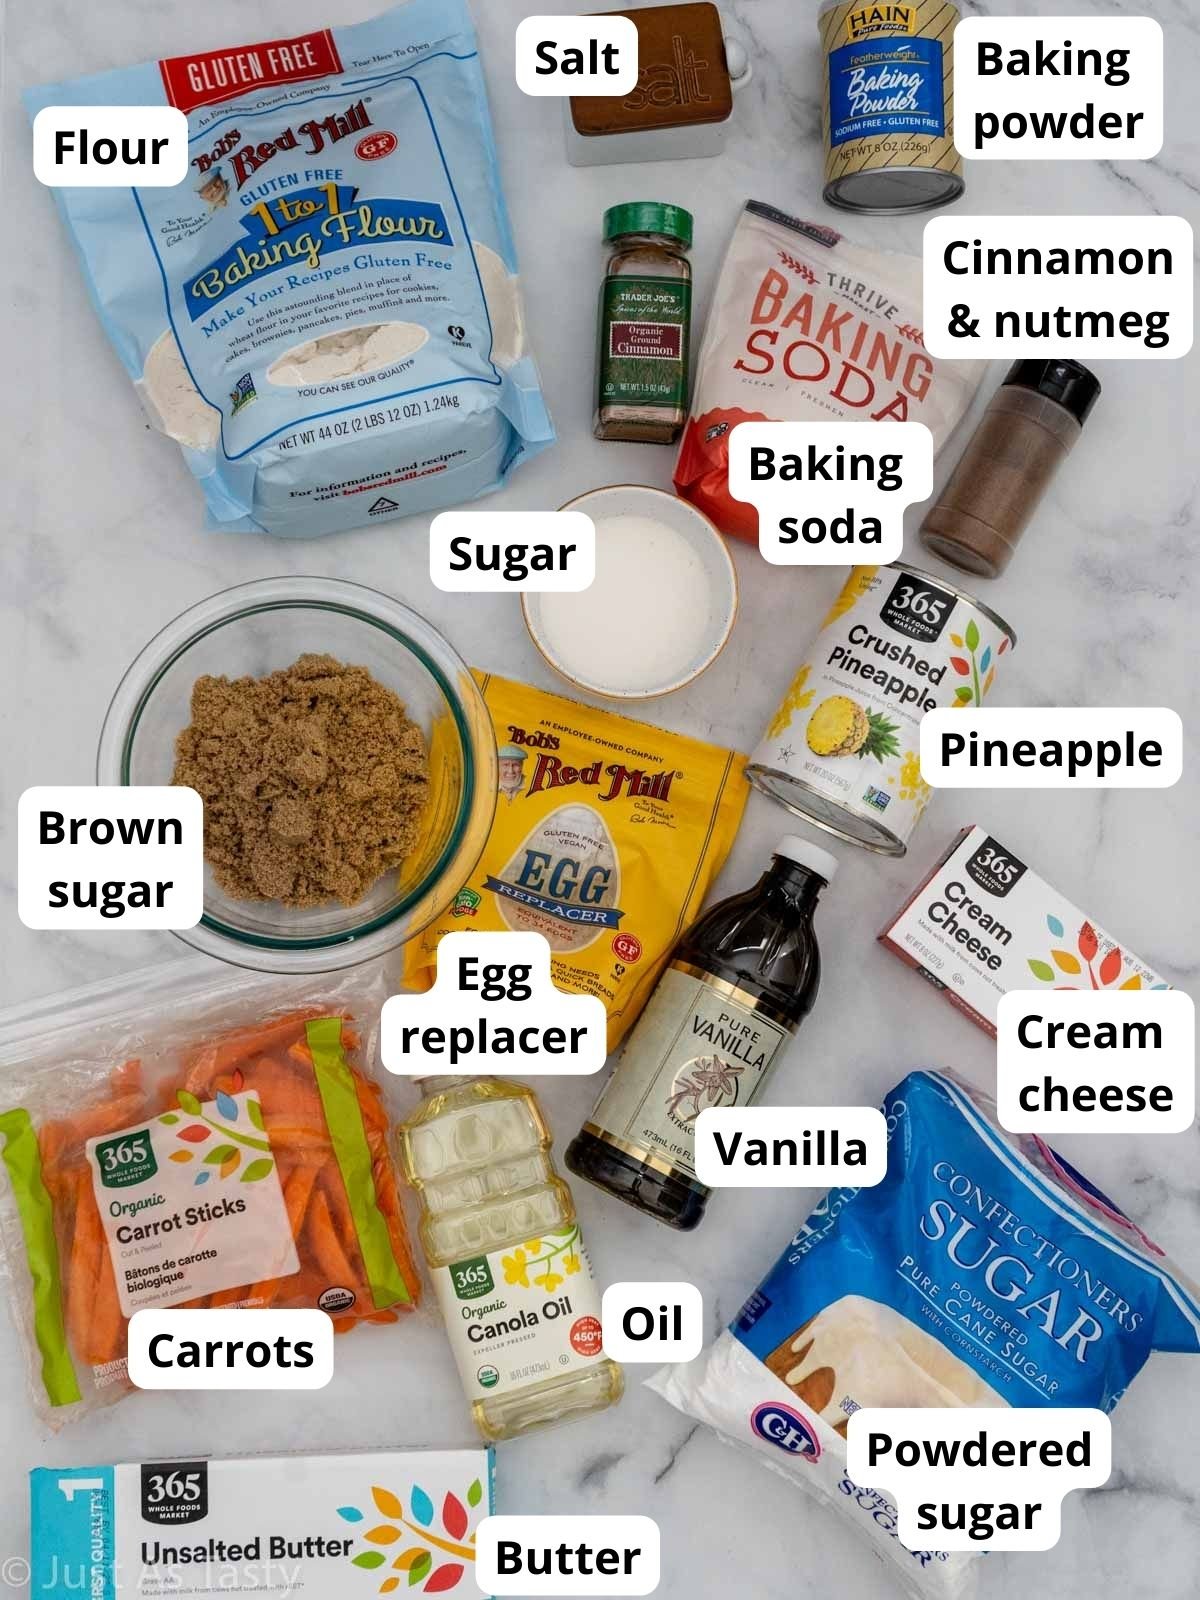 Carrot cake cupcake ingredients.